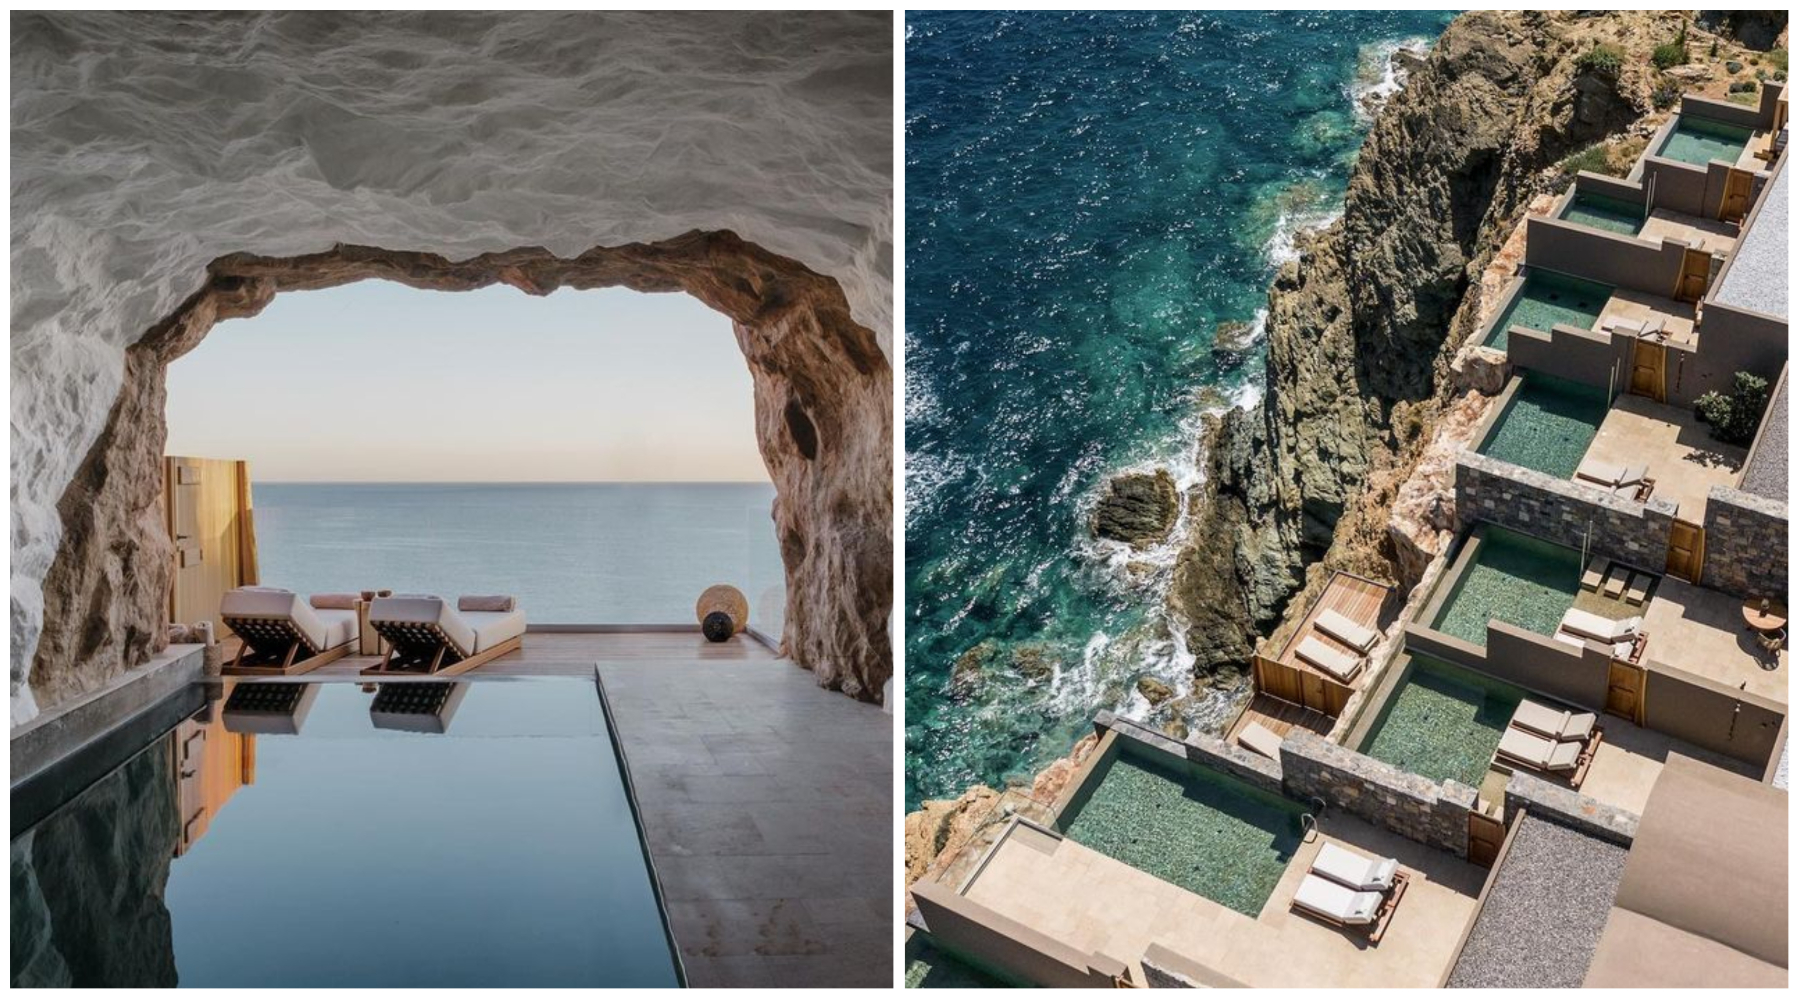 Pronašli smo na Instagramu luksuzni zen hotel na Kritu o kojem maštamo